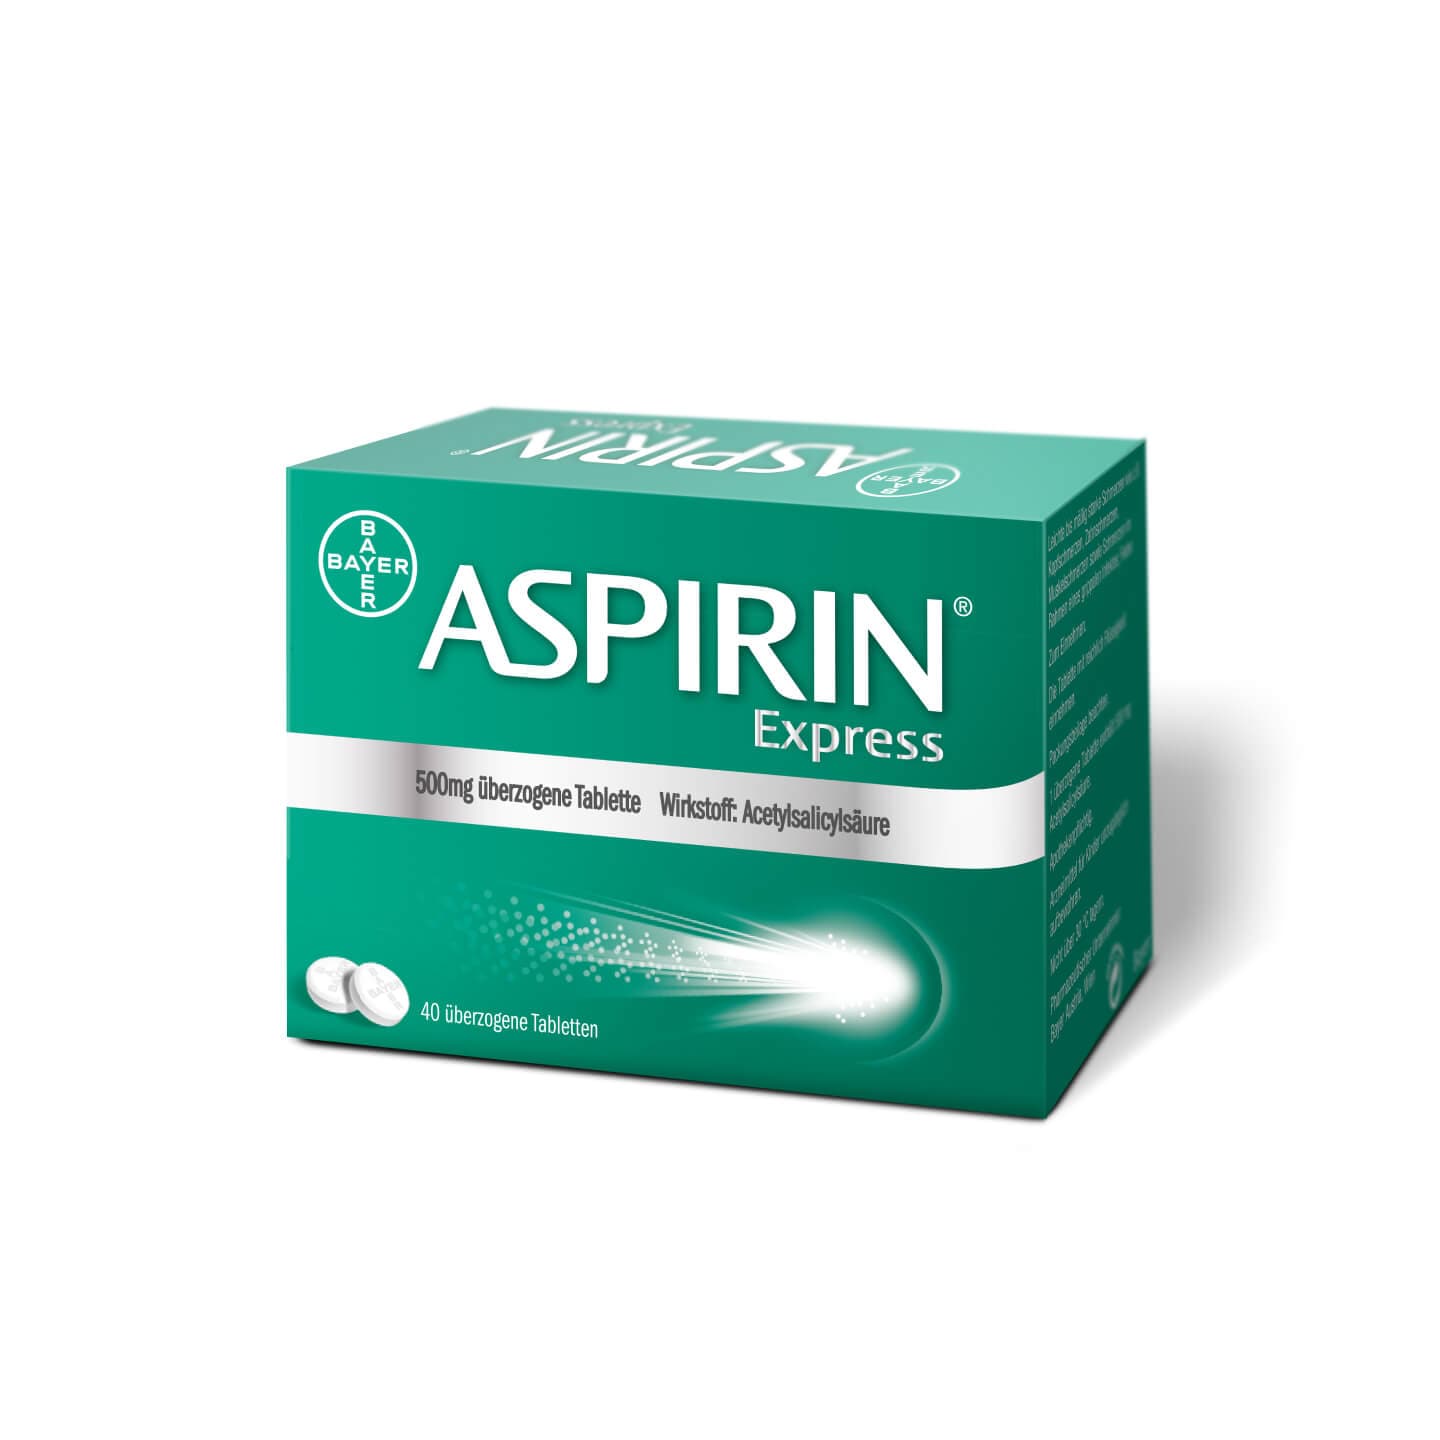 Aspirin® Express 20